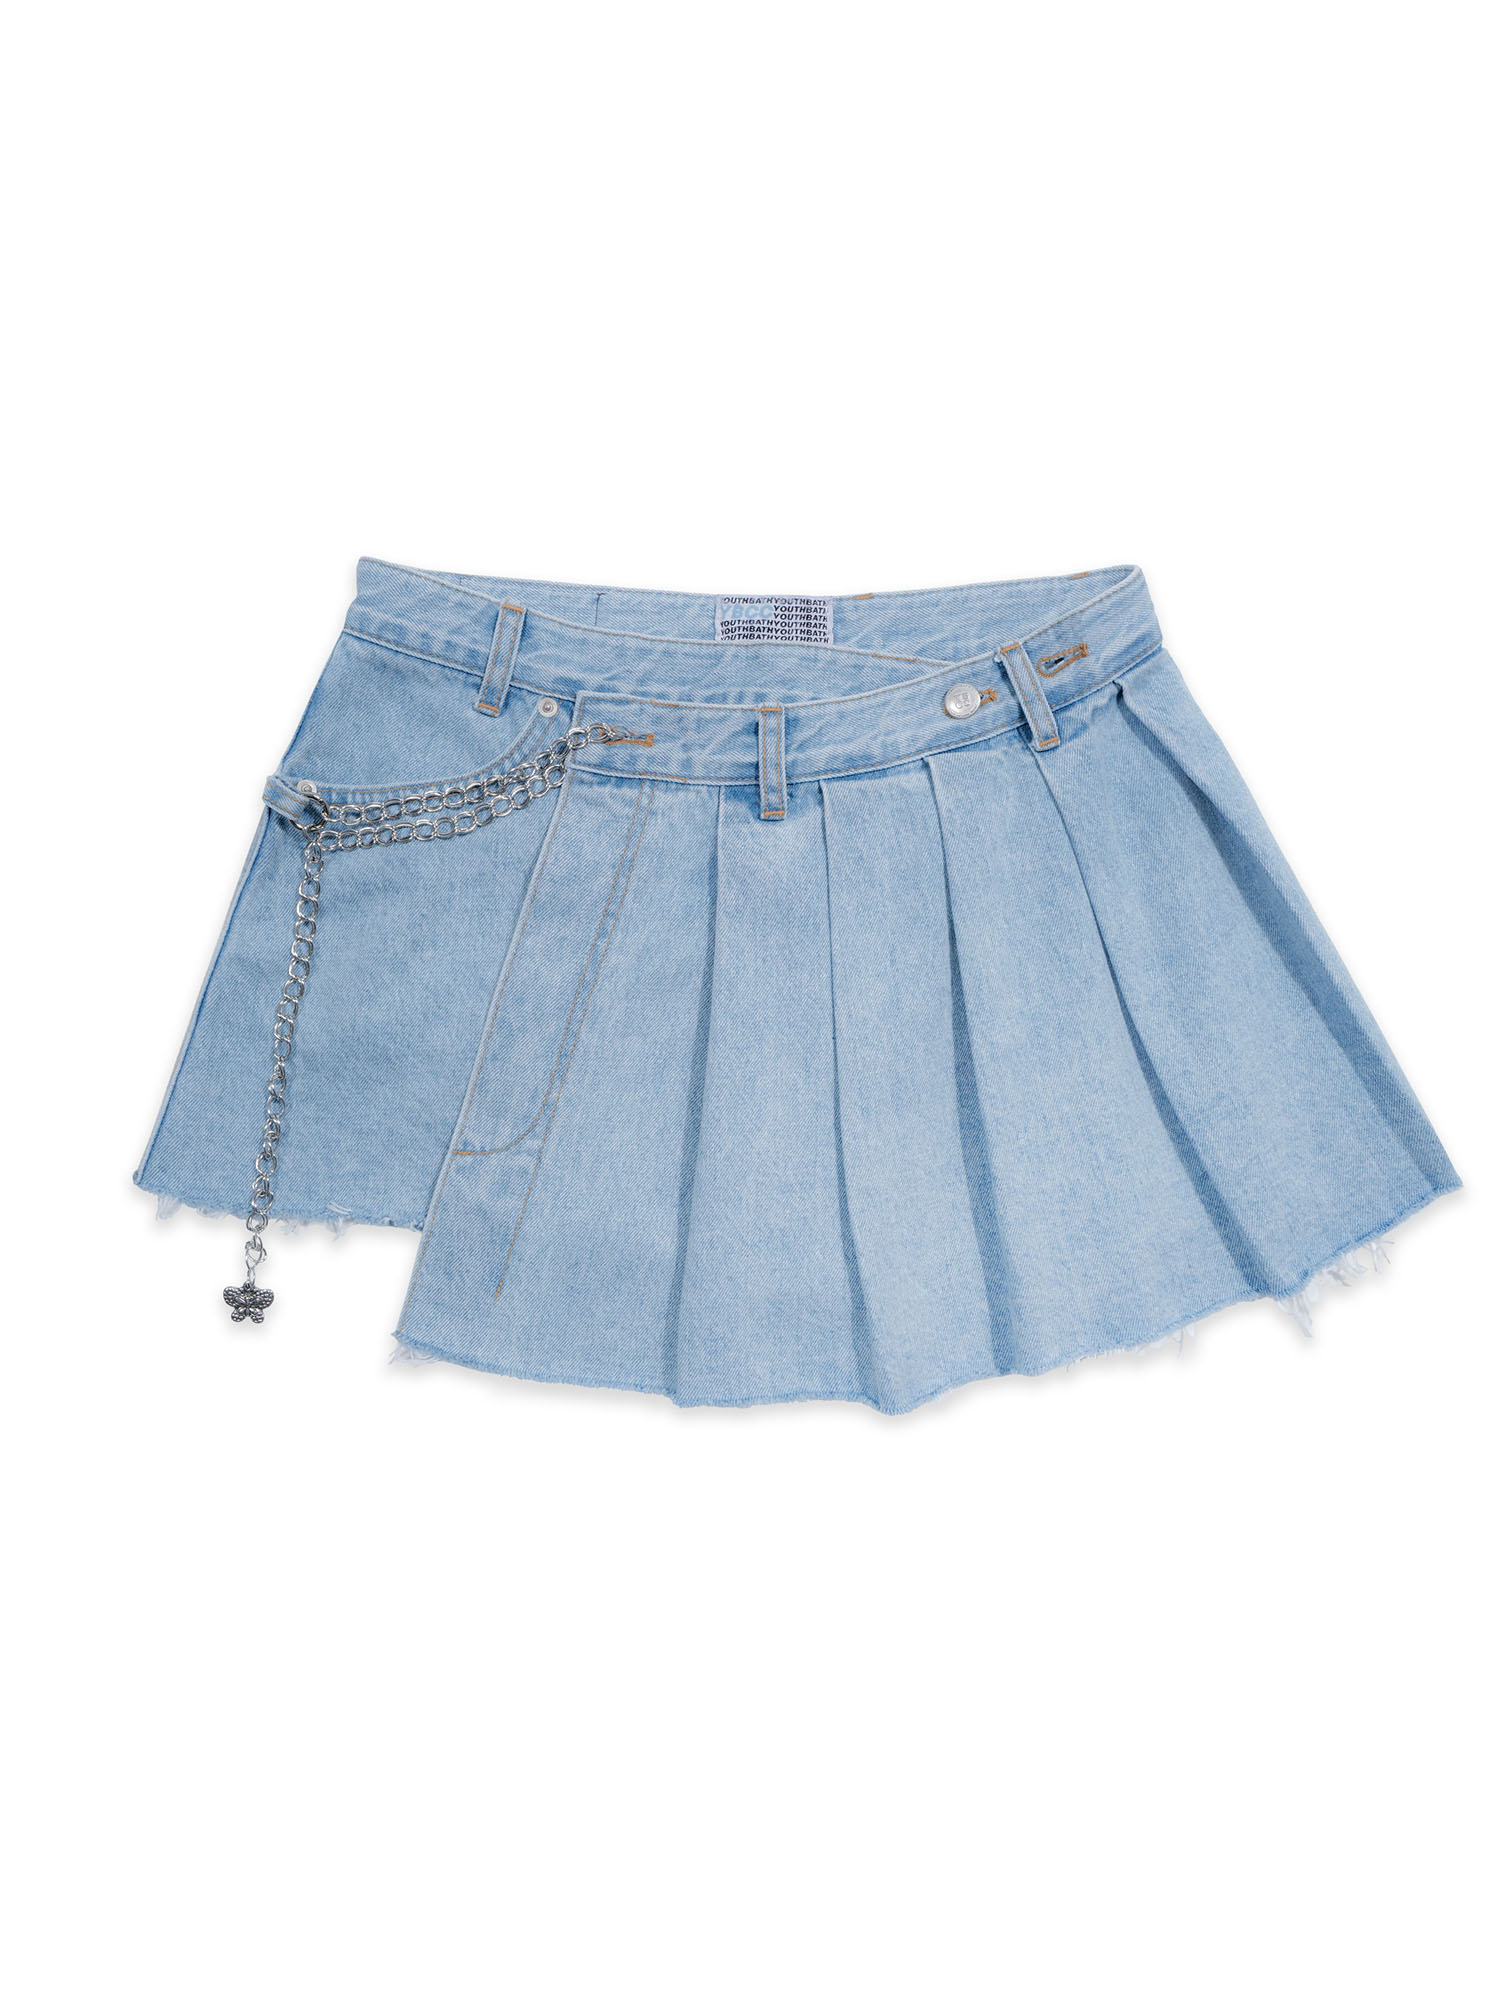 Unbalanced Pleats Chain Skirt_L/Blue